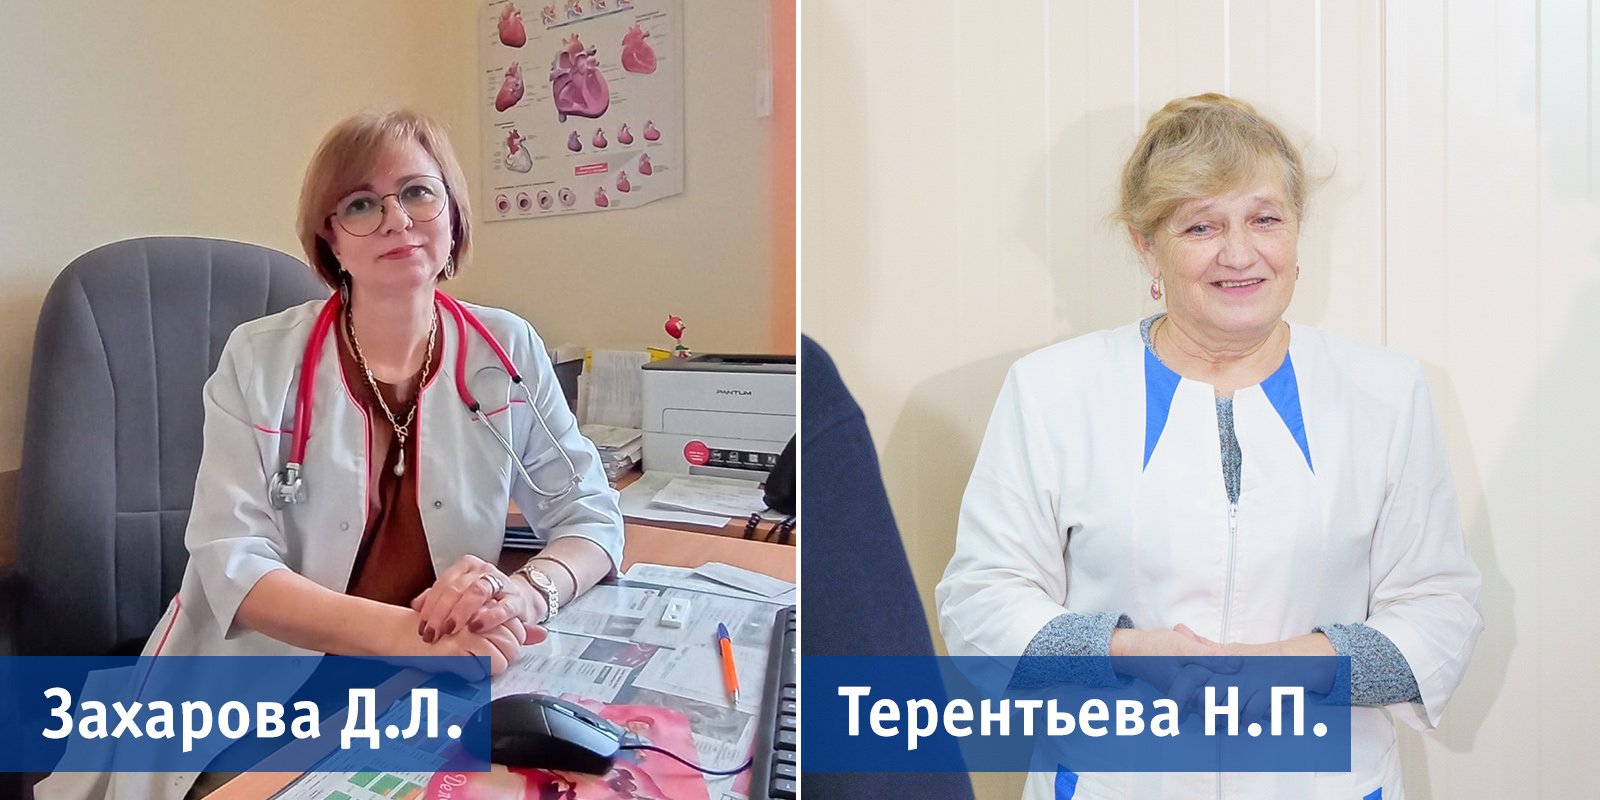 "Народными докторами" в июне стали кардиолог из Иванова и фельдшер ФАПа в Гаврилово-Посадском районе